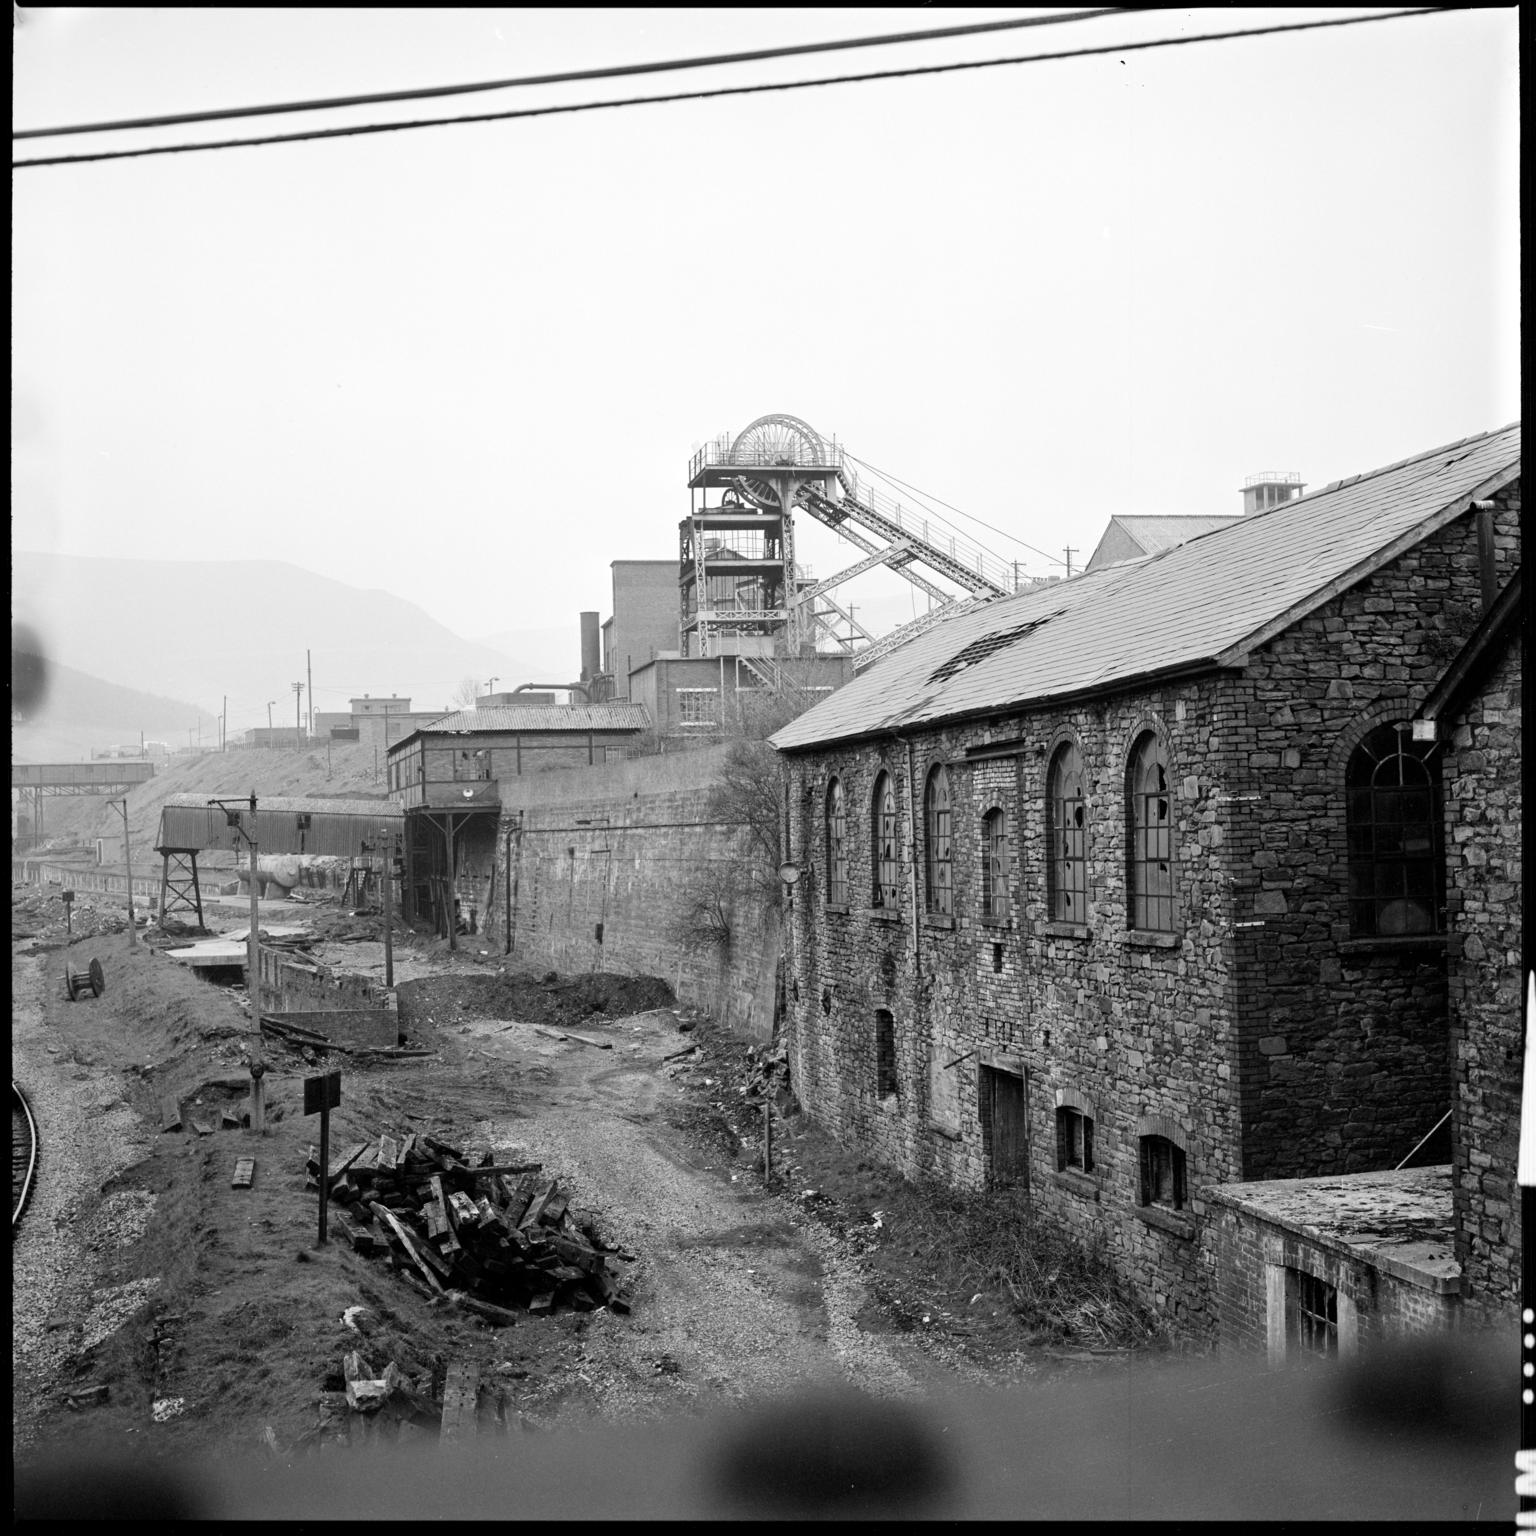 Ffaldau Colliery, film negative